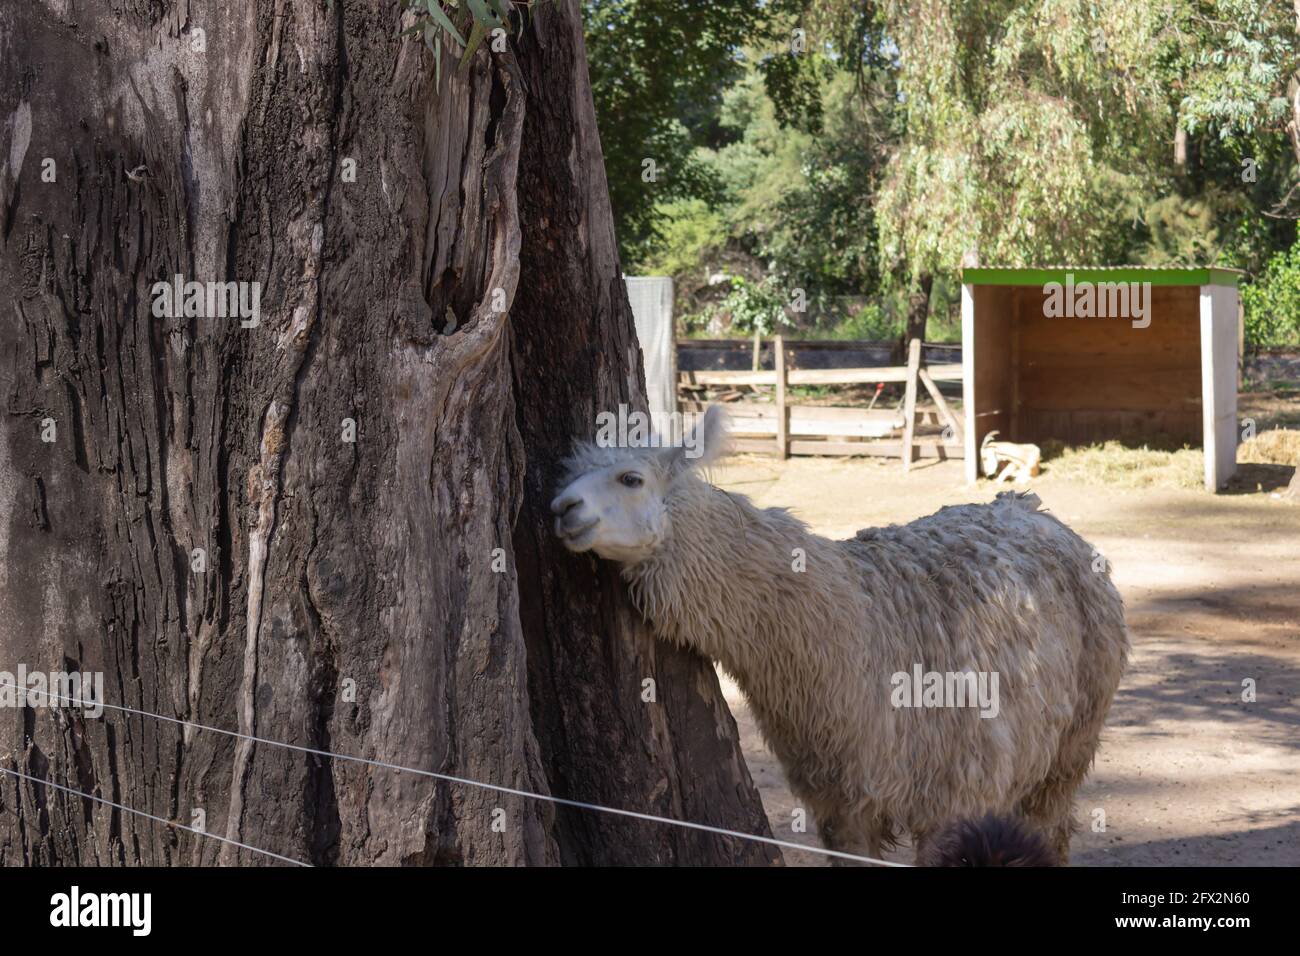 White llama (lama glama) in the farm. Stock Photo